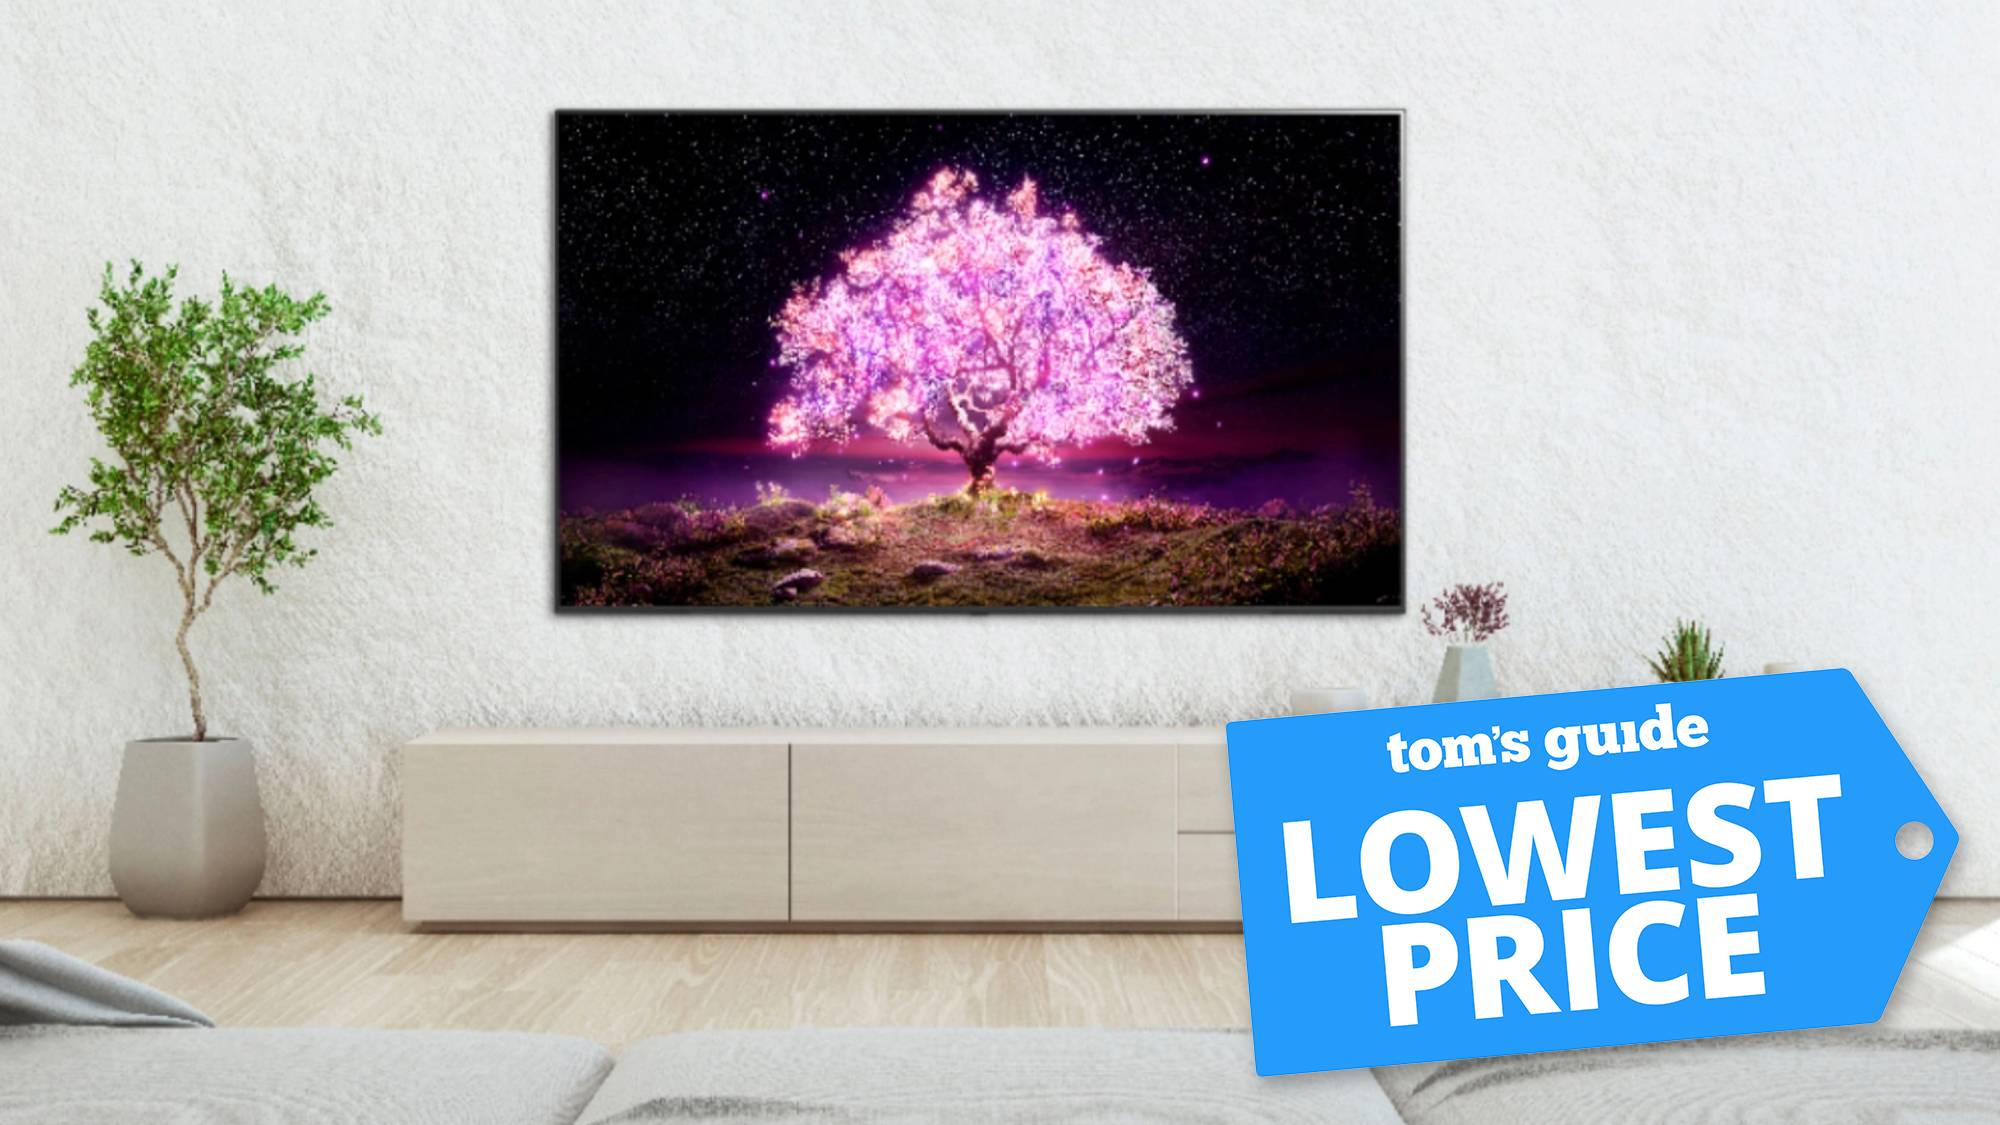 LG C1 OLED TV s obchodnou značkou Tom's Guide